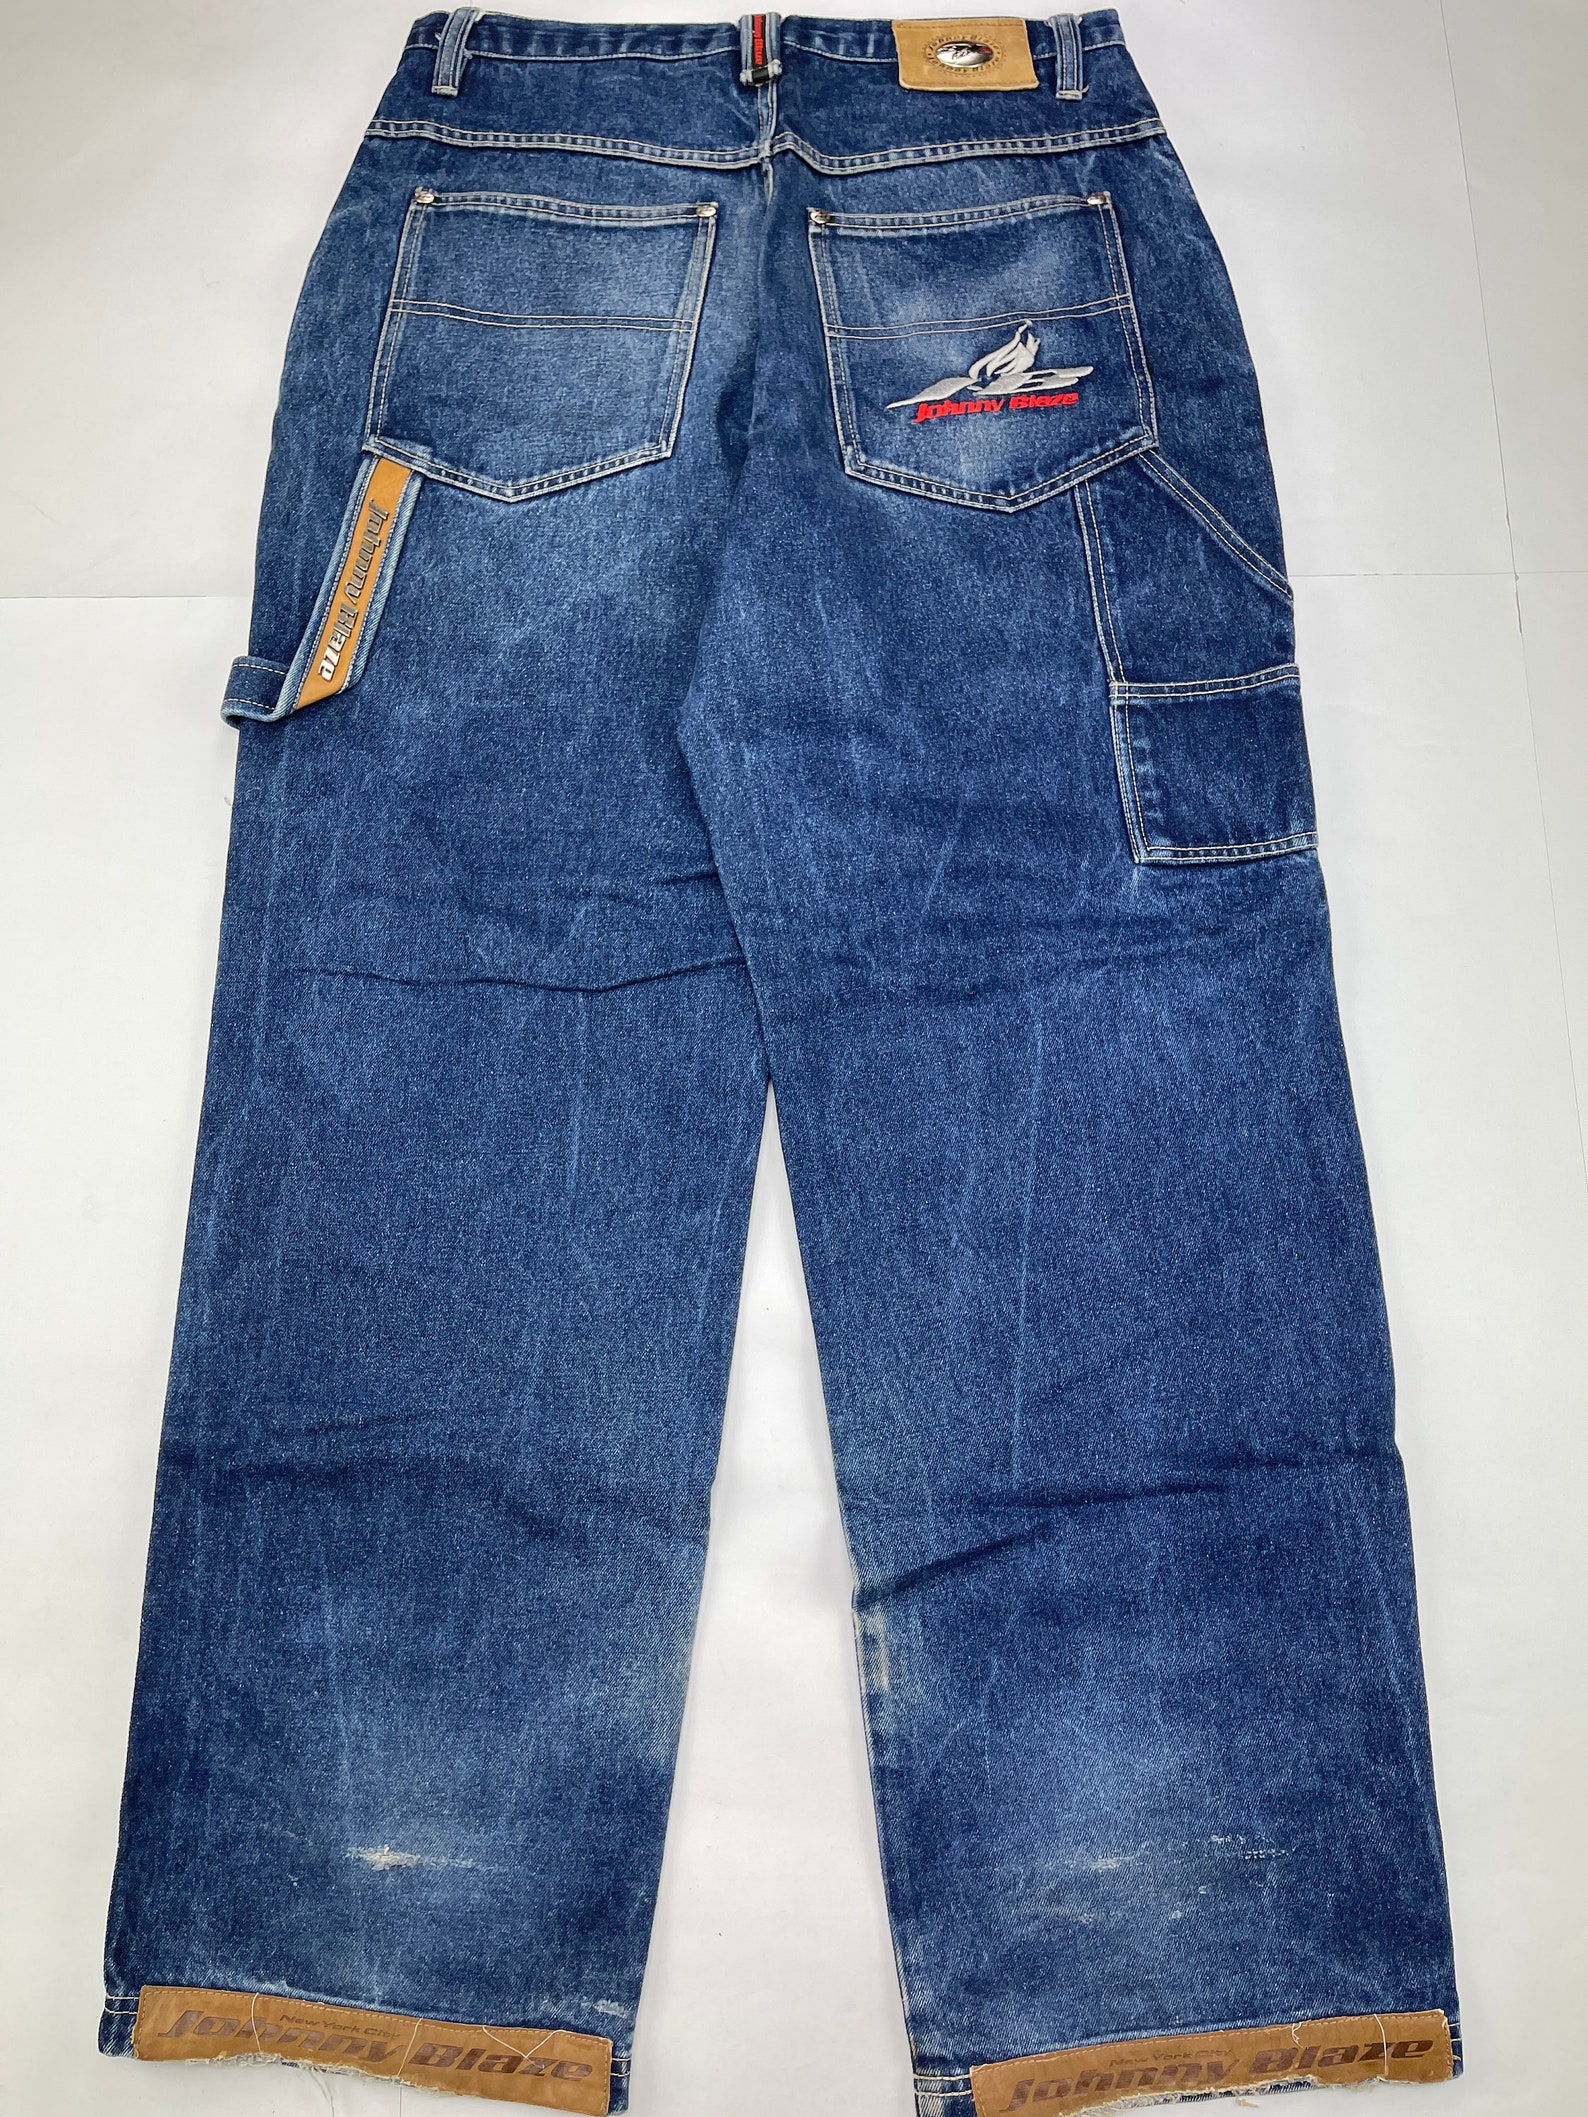 Johnny Blaze jeans vintage Wu Wear blue loose baggy pants Wu | Etsy